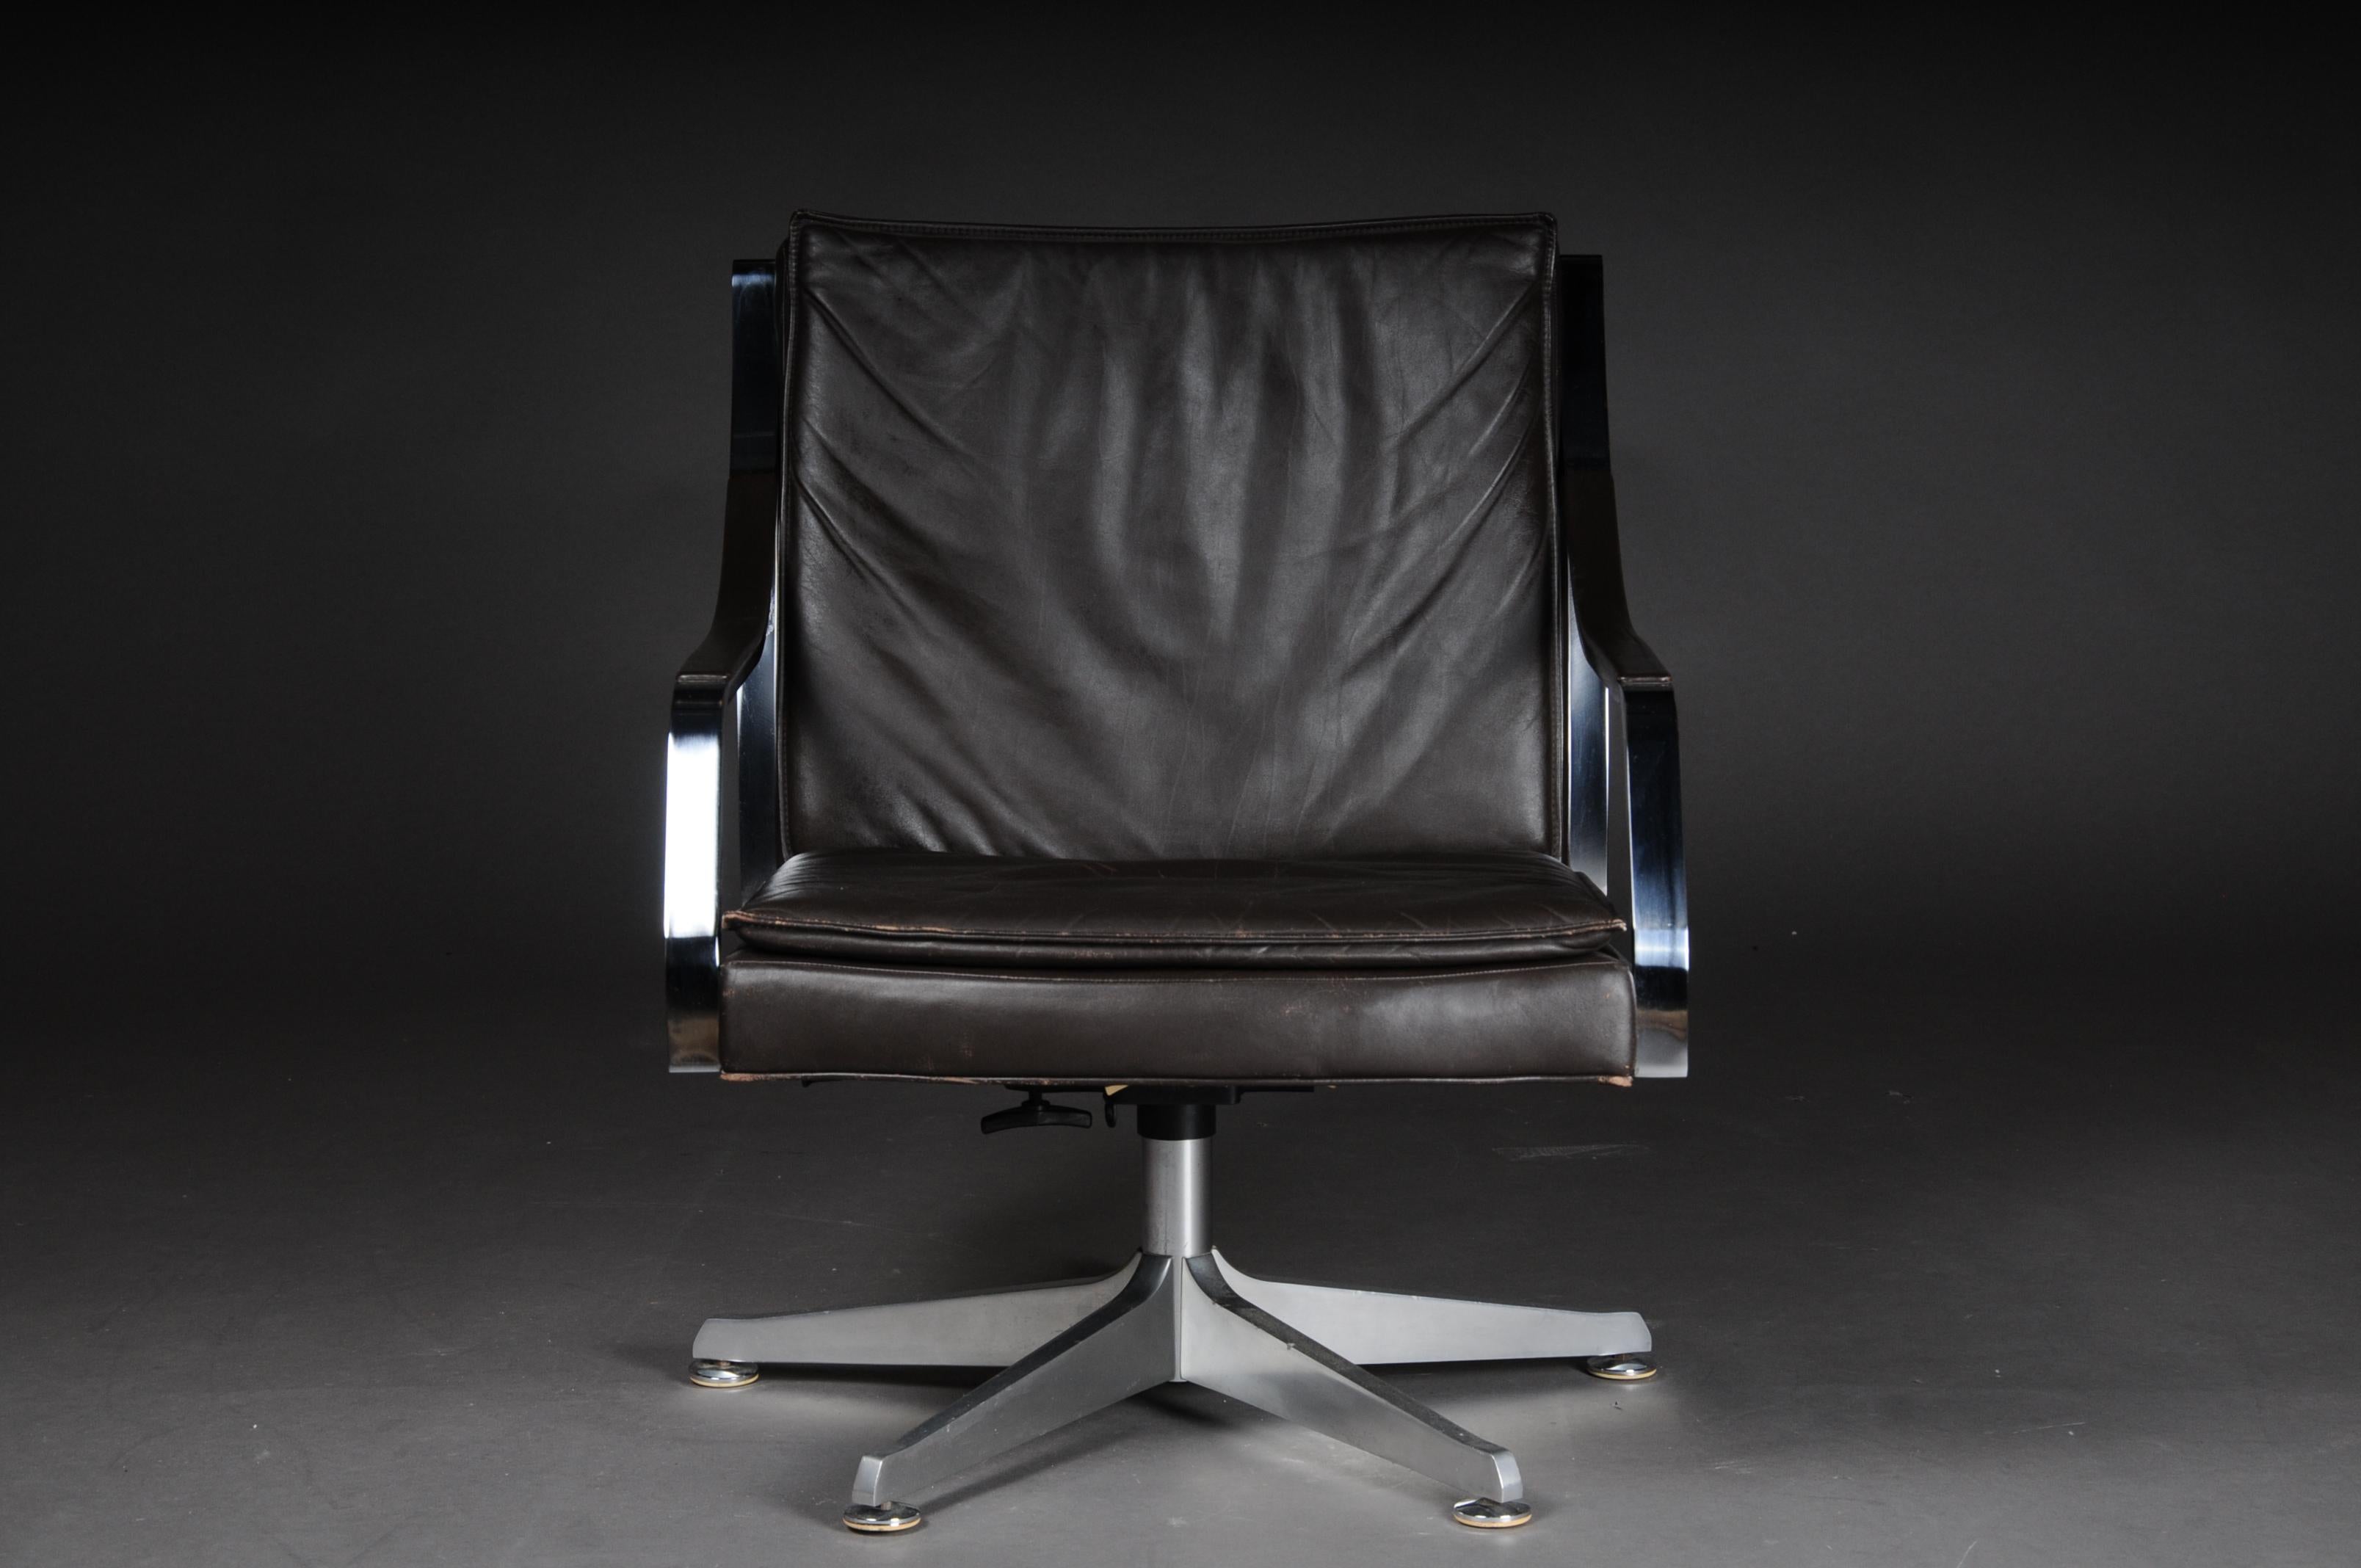 Paire de (2) fauteuils / chaises longues design vintage Norvège, 1970

Paire de fauteuils vintage exclusifs. Cuir souple foncé. Avec fonction de rotation et d'inclinaison. Cuir très doux et confortable. Coque de siège sur un cadre en aluminium en